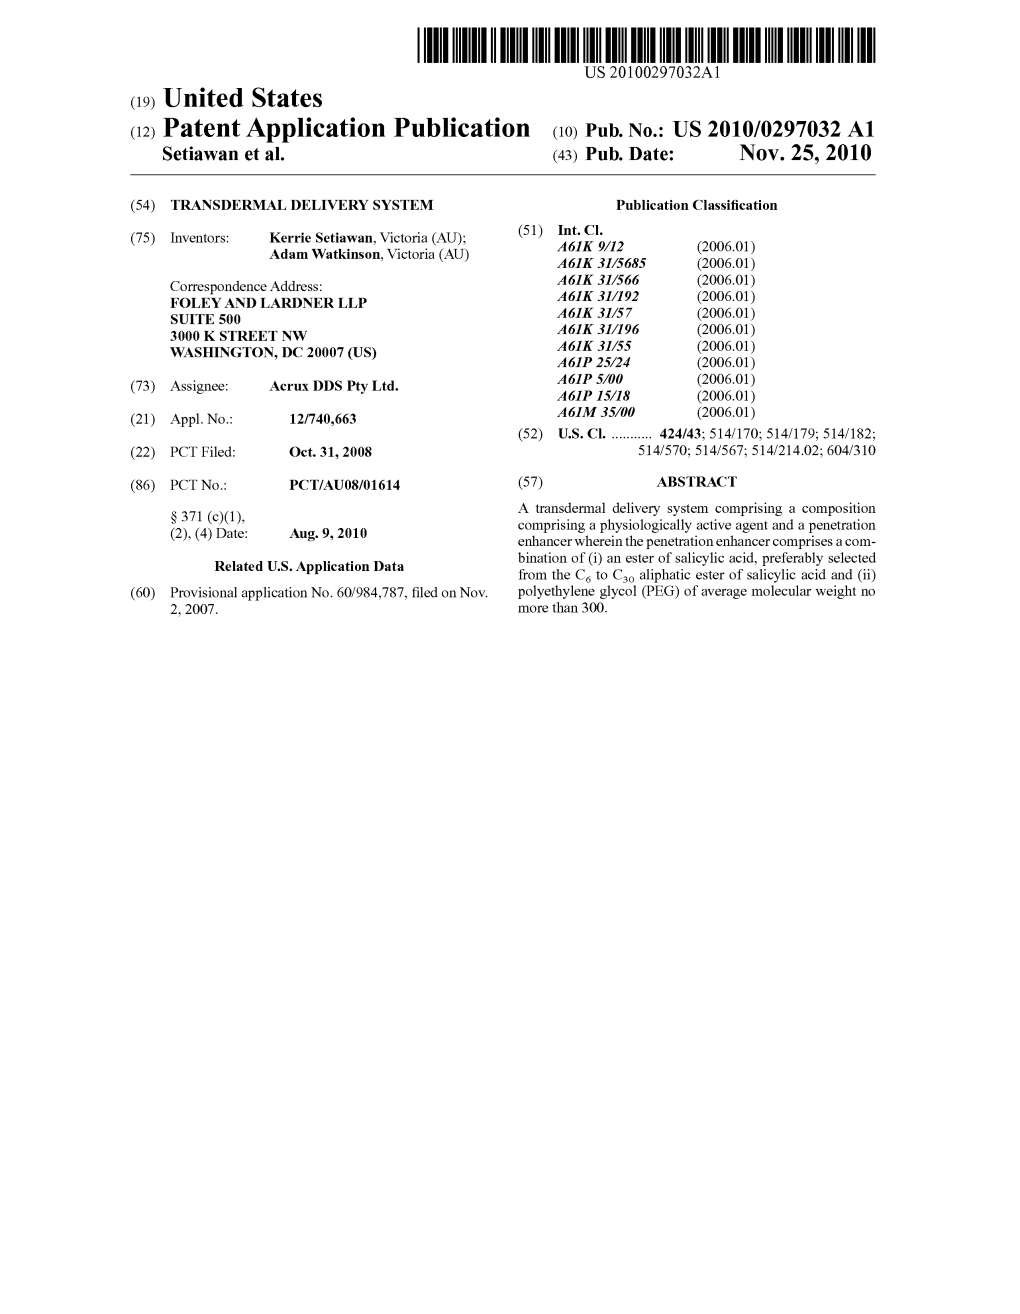 (12) Patent Application Publication (10) Pub. No.: US 2010/0297032 A1 Setiawan Et Al